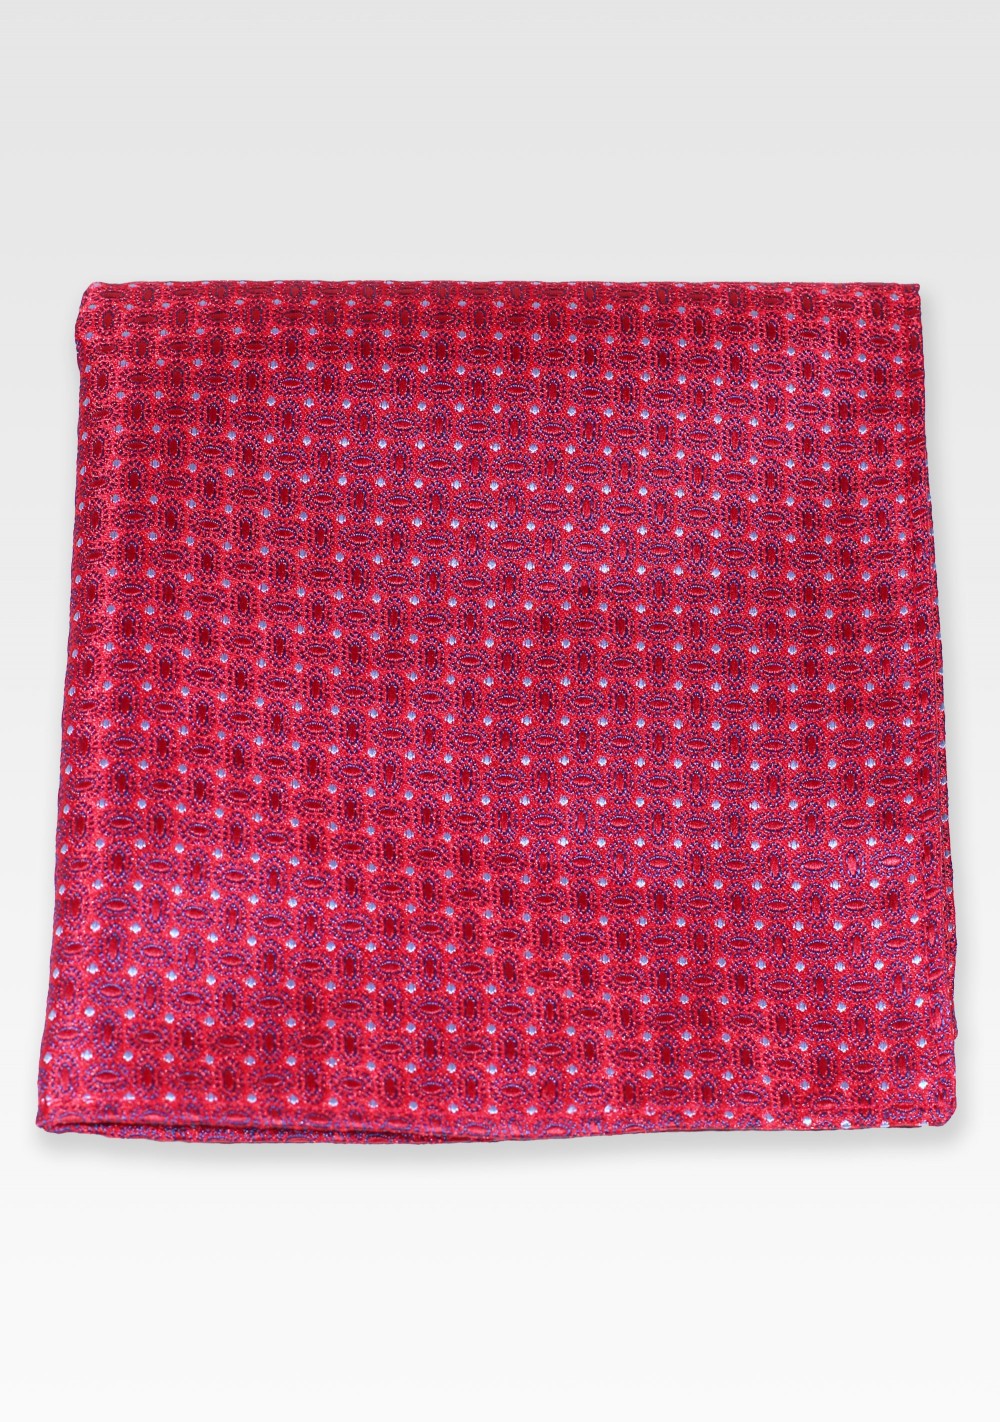 Patterned Pocket Square in Crimson